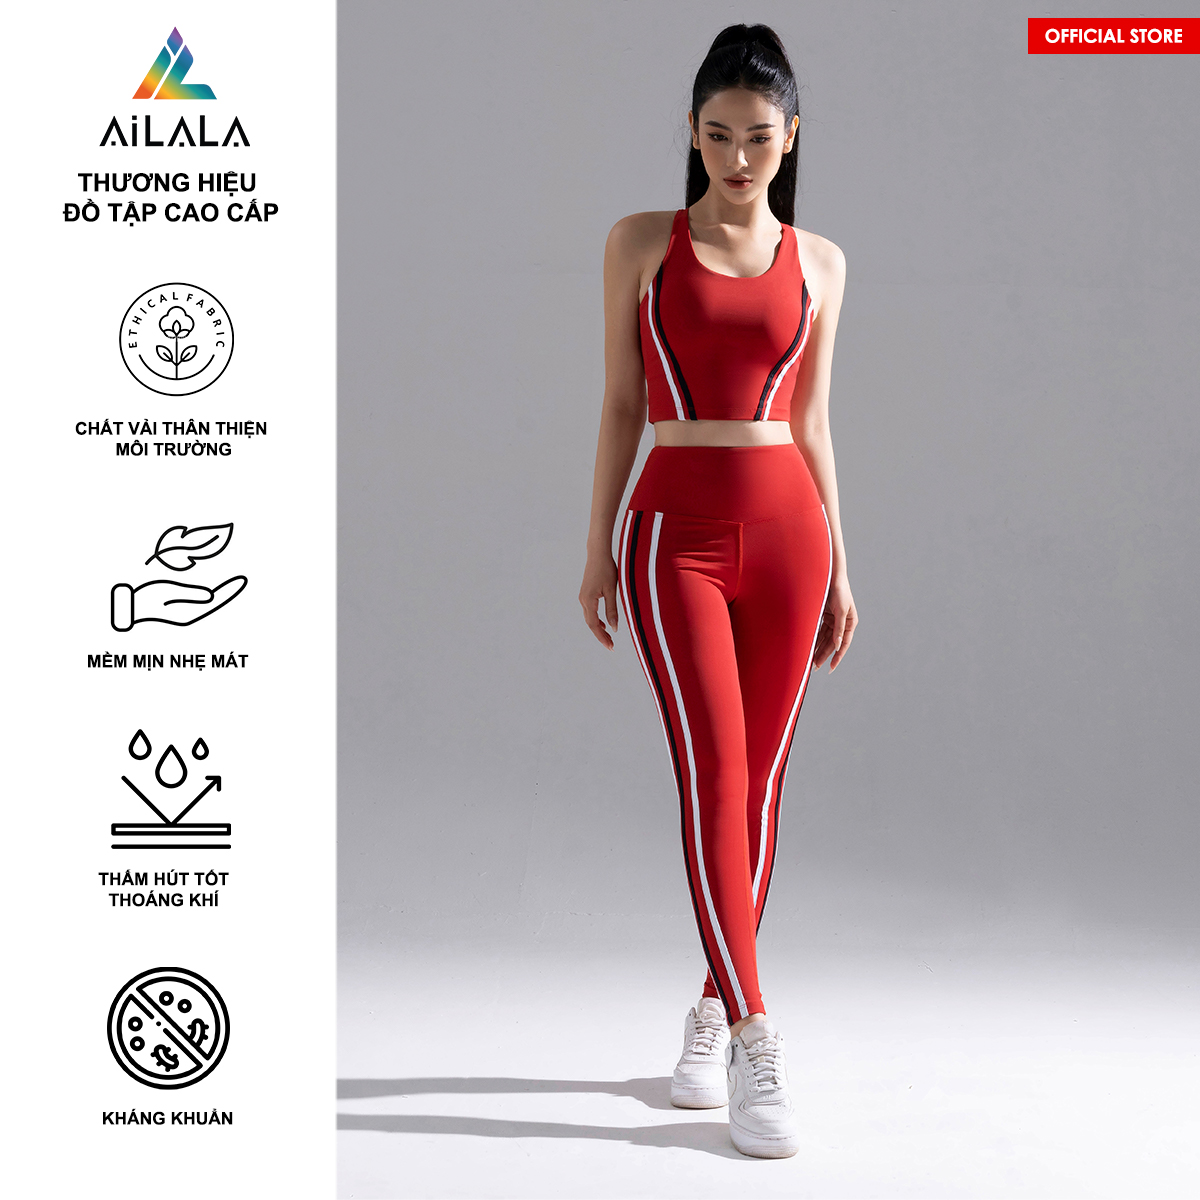 AiLALA Bộ Đồ Tập Thể Thao Nữ Mega Red , áo sẵn đệm mút, legging cạp cao, phù hợp Yoga, Gym, Pilates, thiết kế tôn dáng